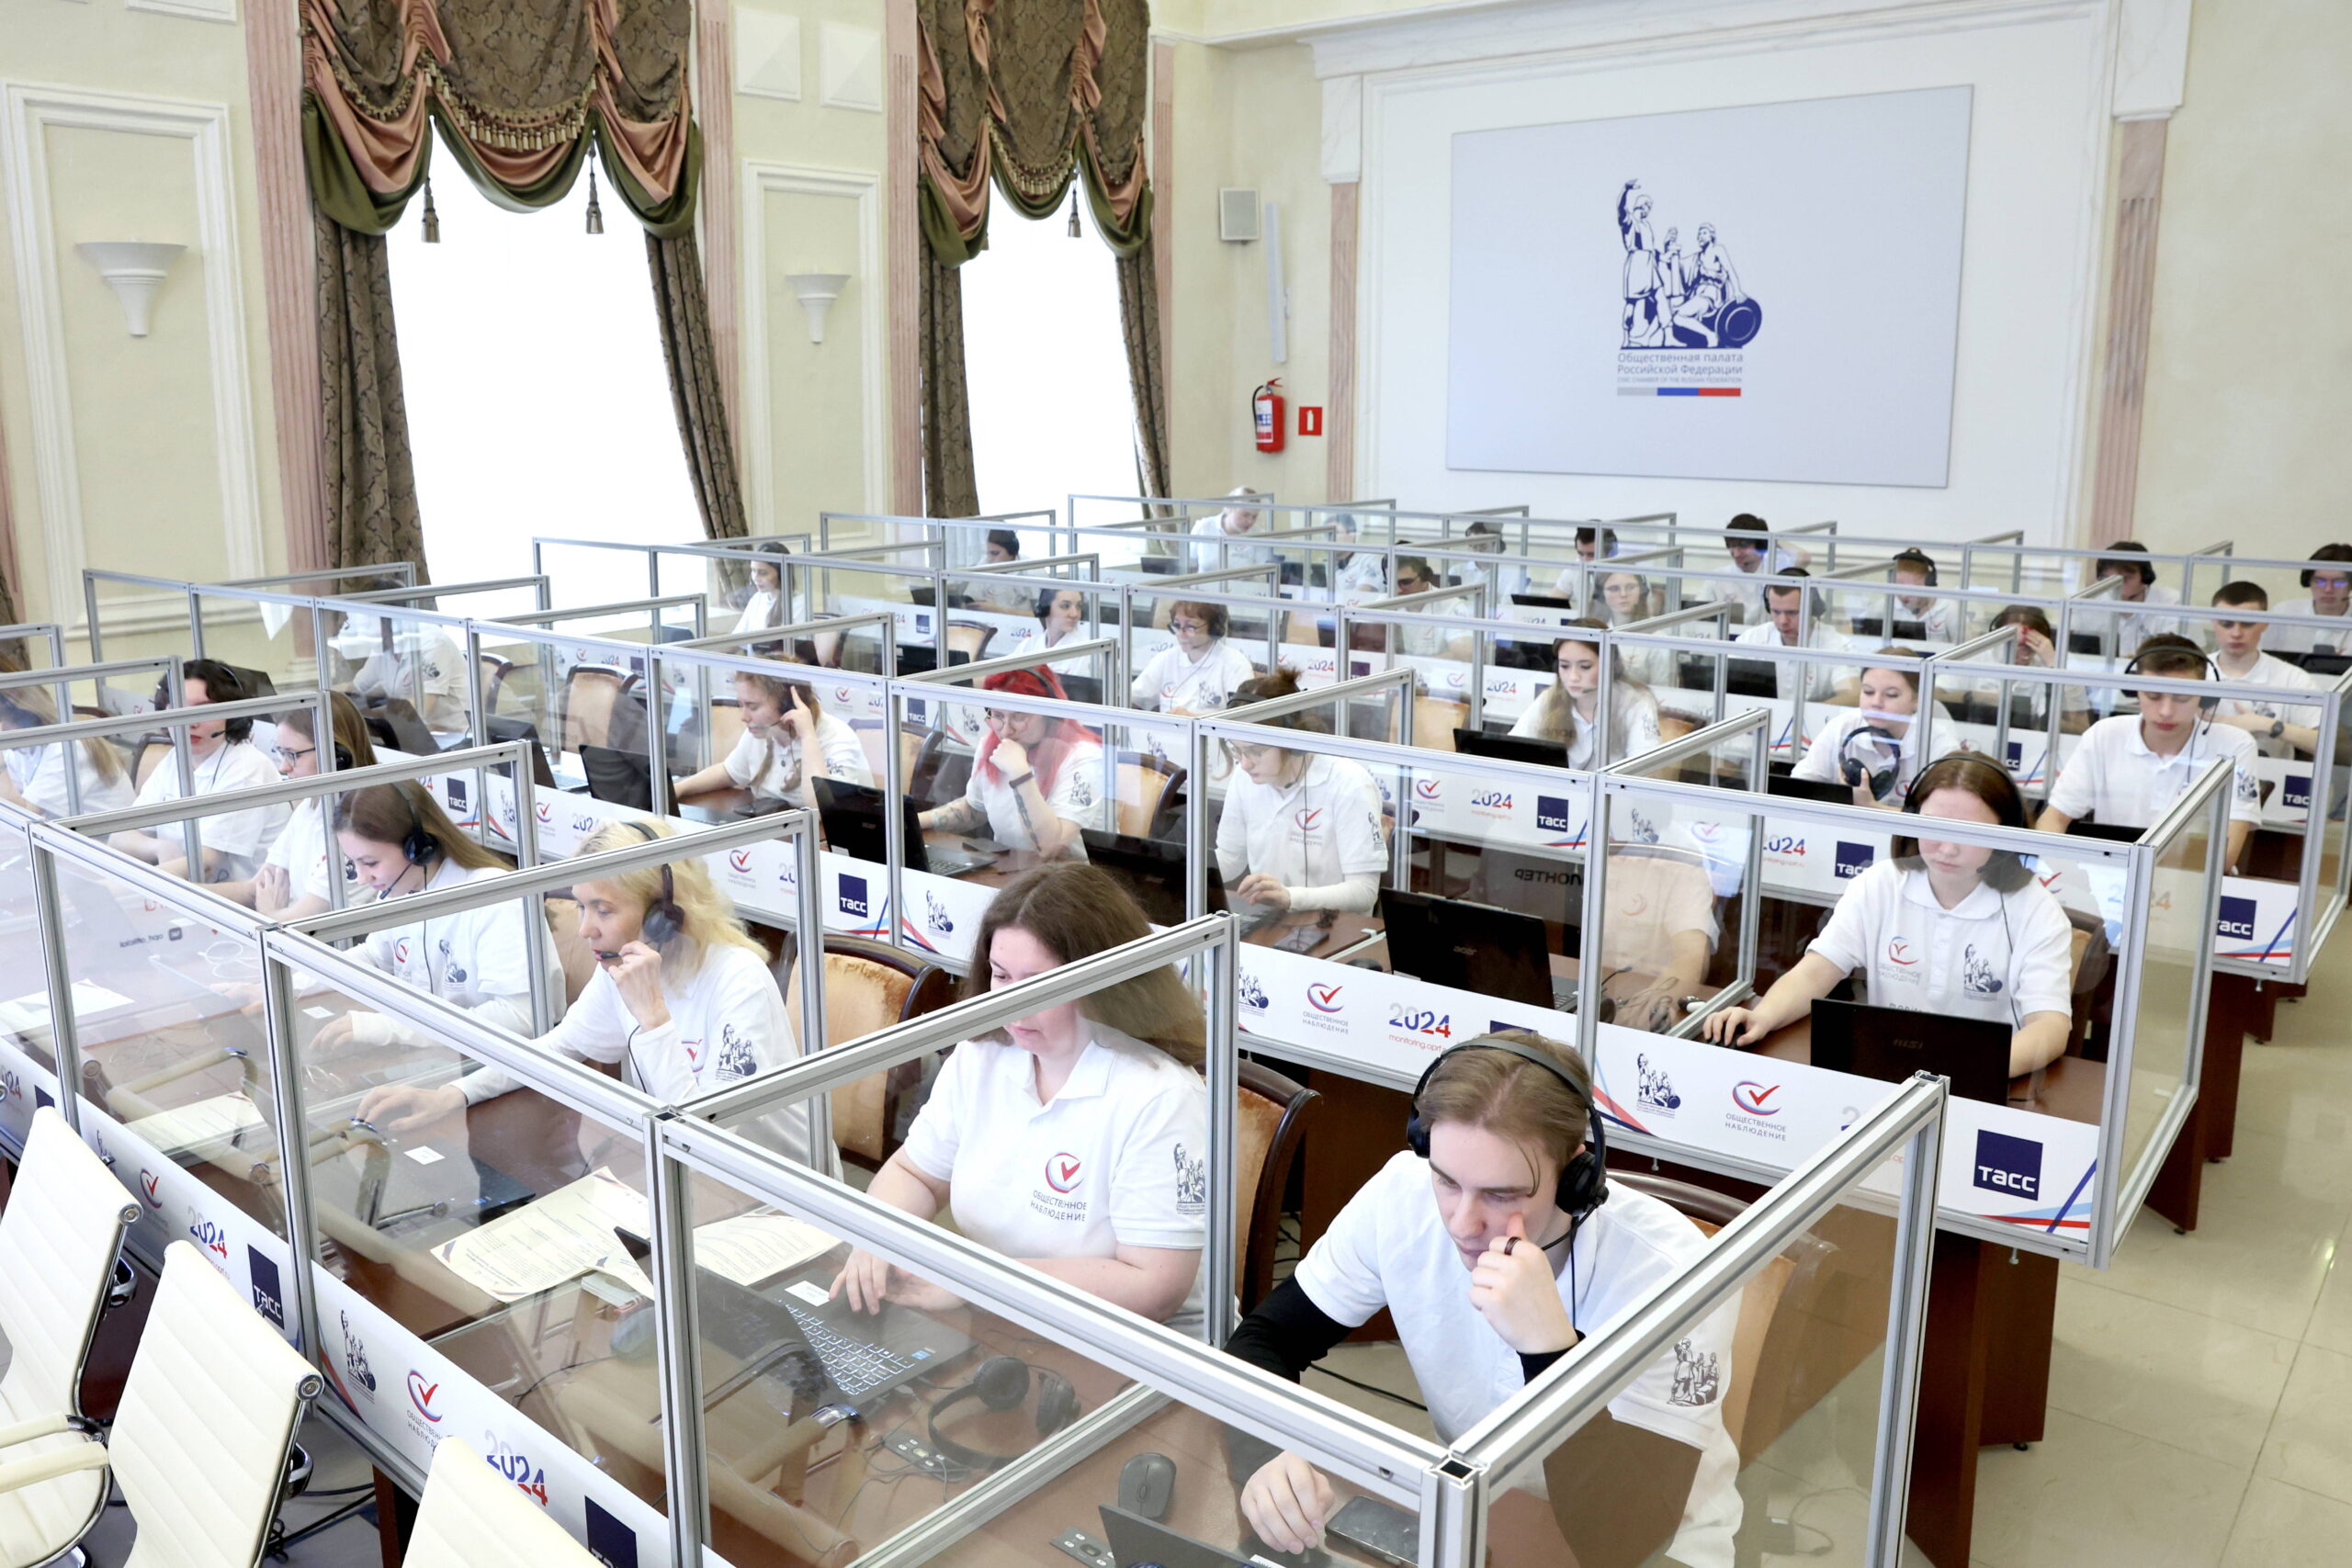 Des volontaires au centre de situation d'observation des élections à la Chambre civique russe. © Mikhail Tereshchenko/TASS/Sipa USA